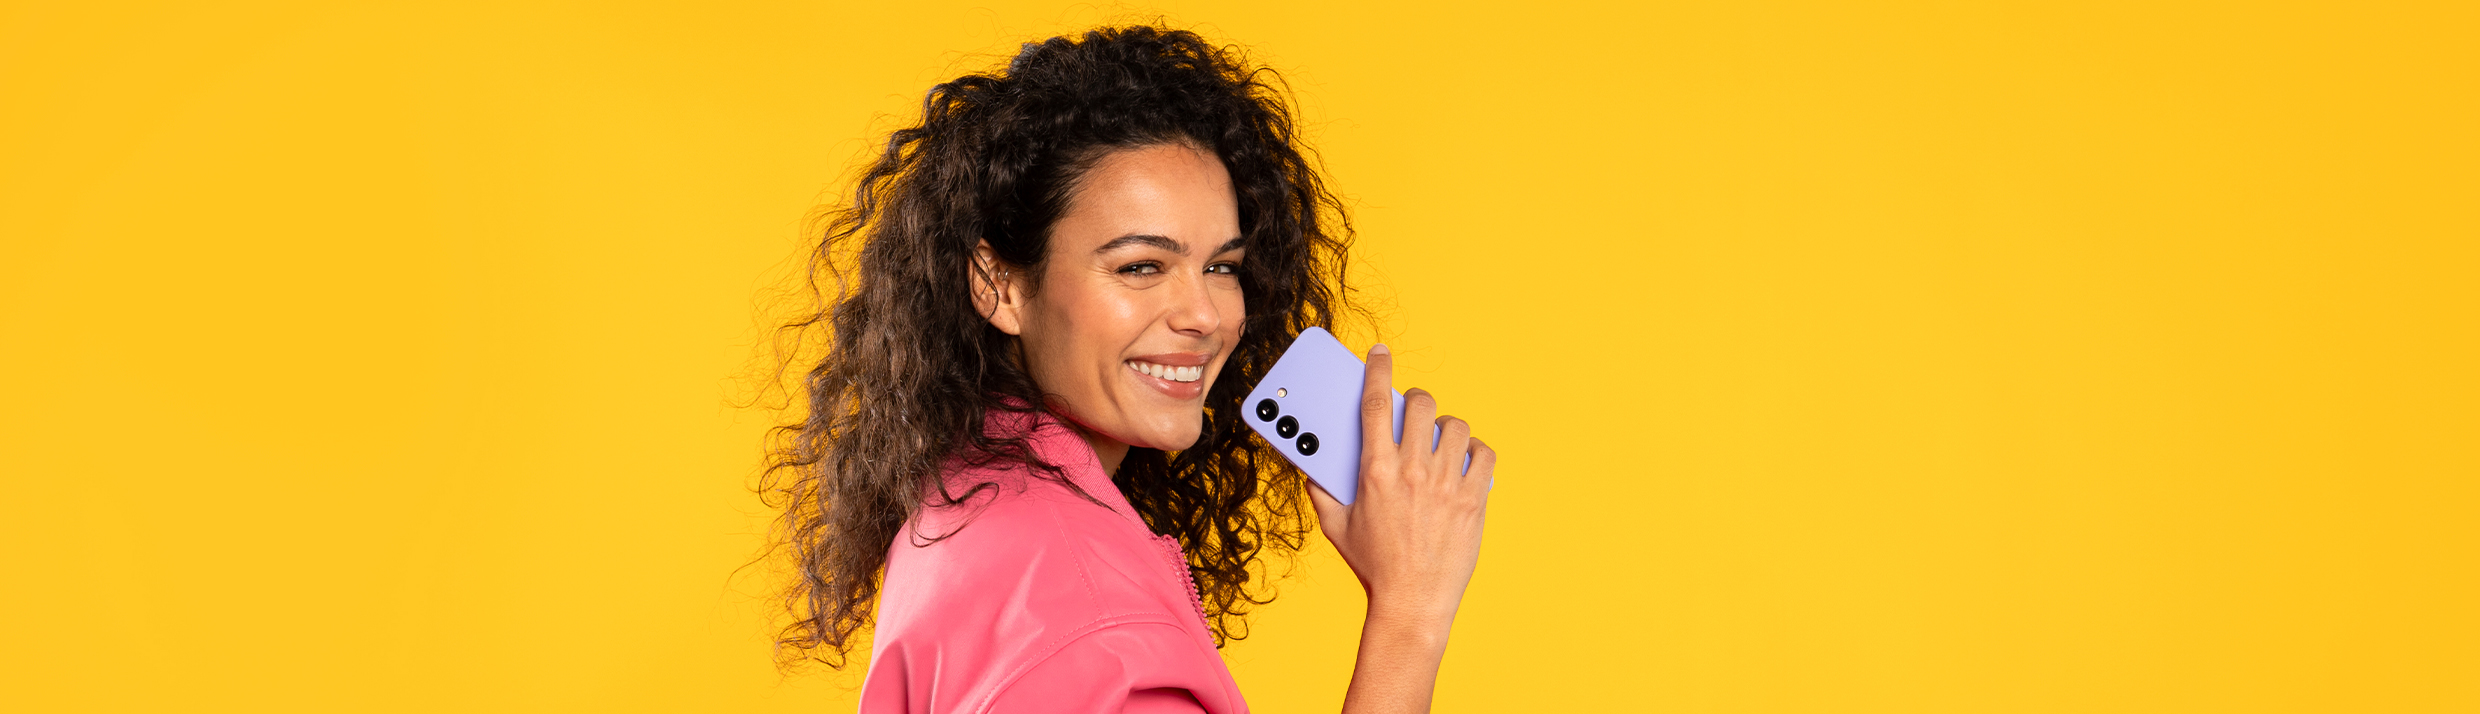 Une femme souriante tient une coque de téléphone violette, l'arrière-plan est jaune.